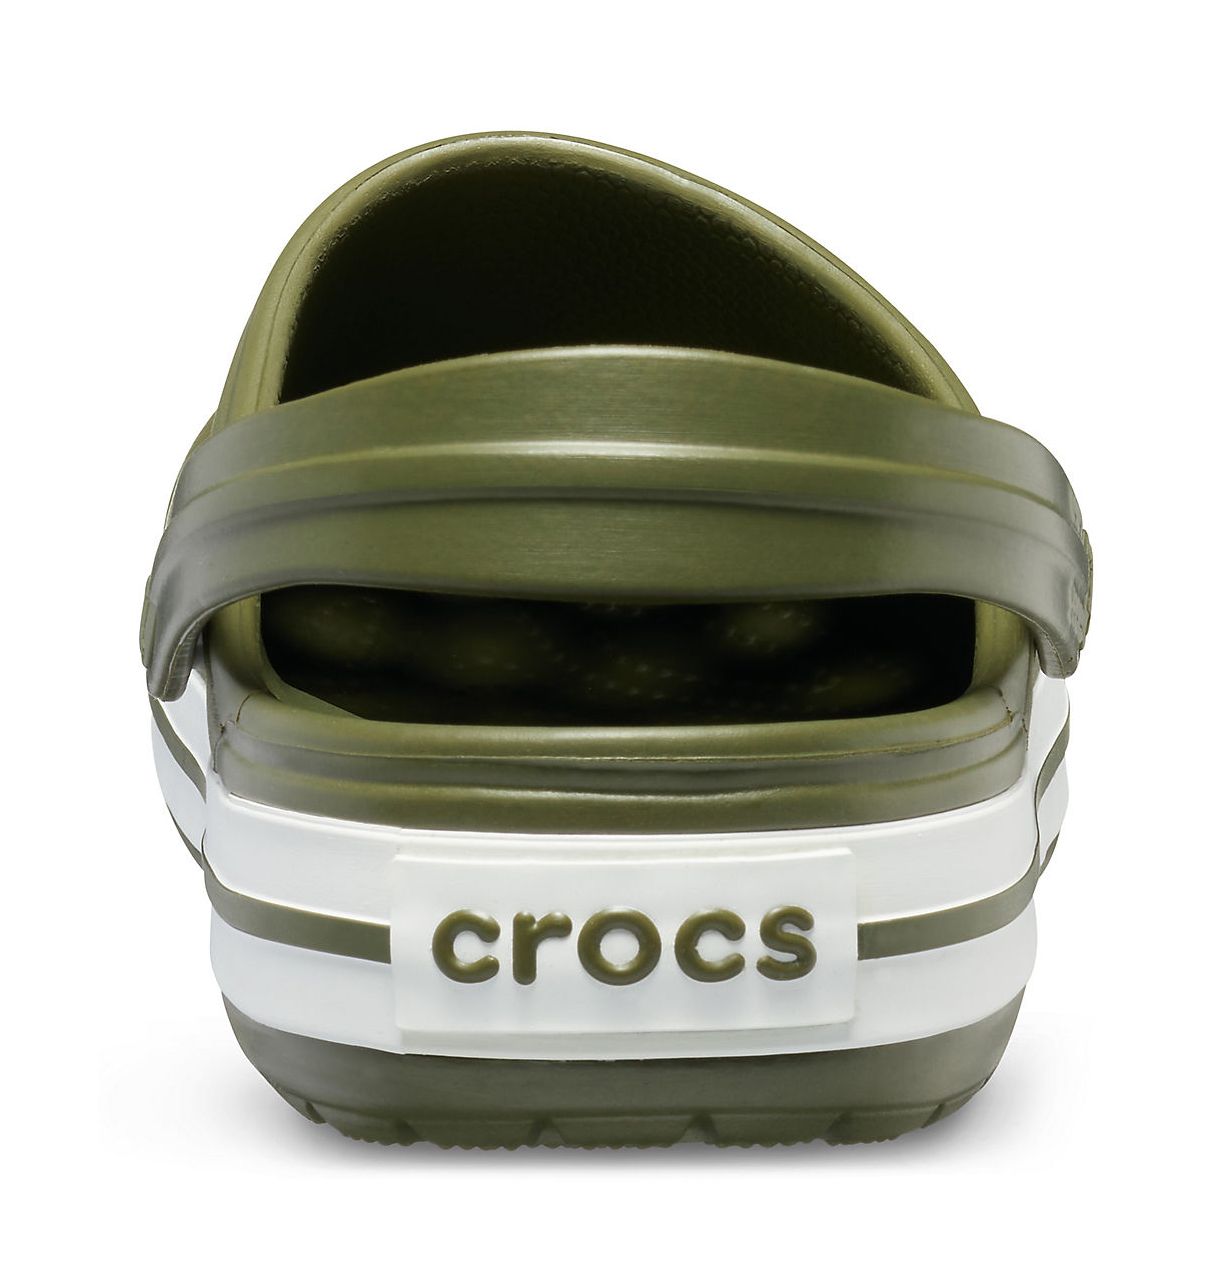 Crocs 11016. Crocs Crocband Clog. Crocs Crocband Army Green. Crocs Crocband цвета хаки. Купить crocs мужские оригинал